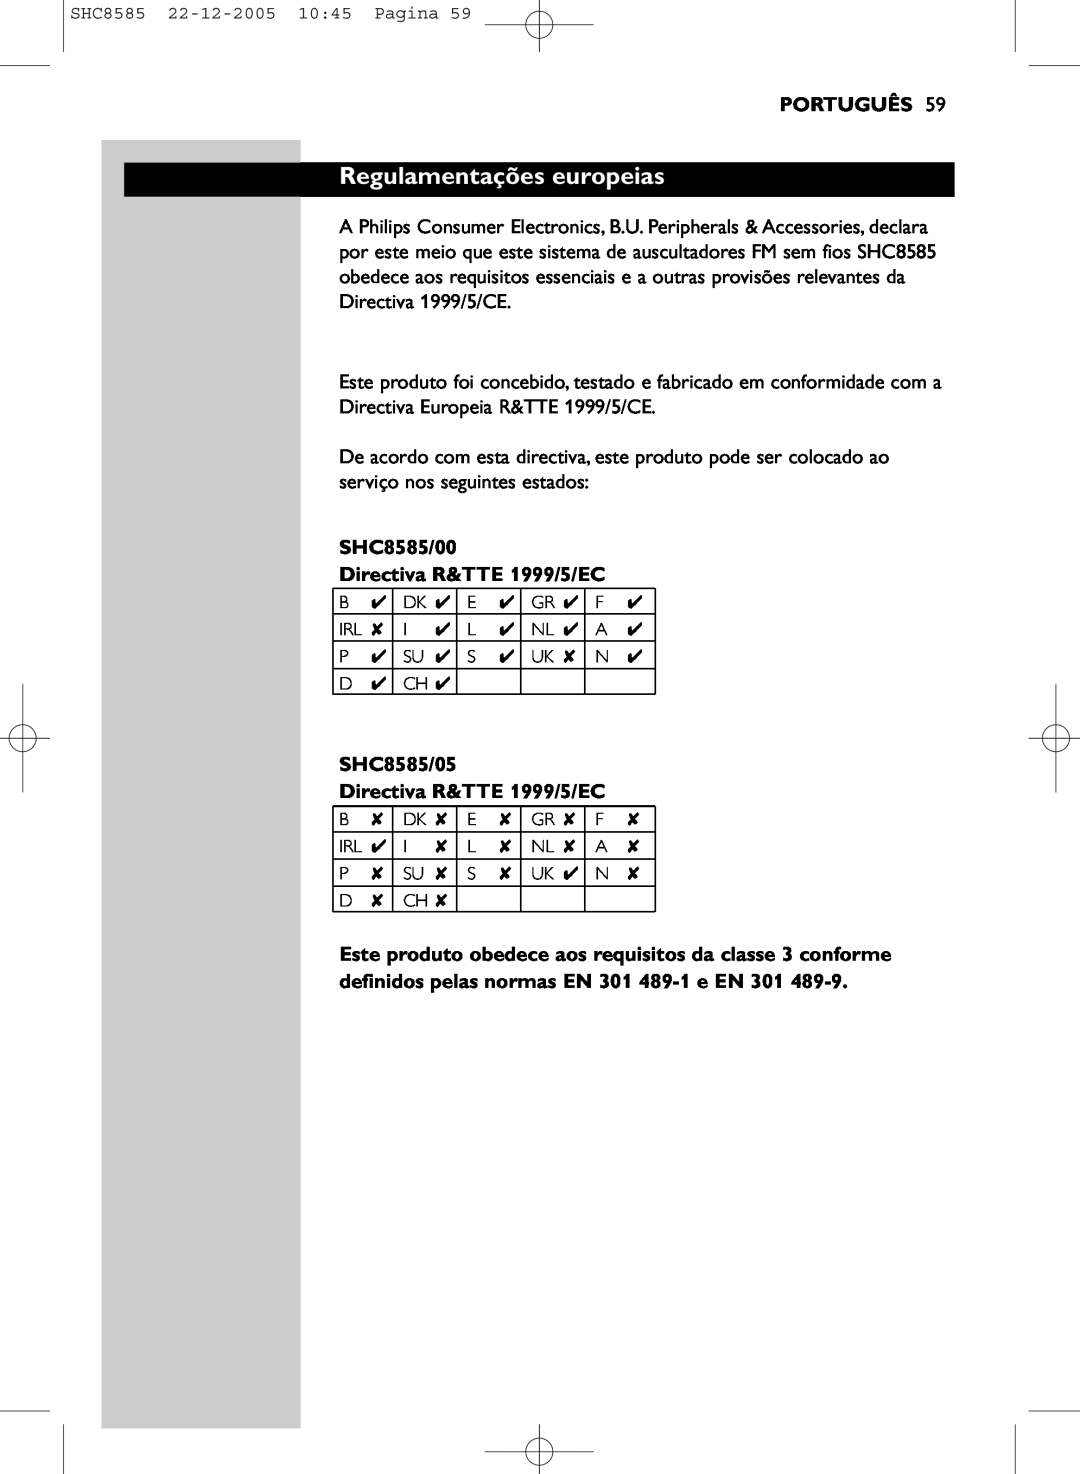 Philips SHC8585/05 manual Regulamentações europeias, Português, SHC8585/00 Directiva R&TTE 1999/5/EC 